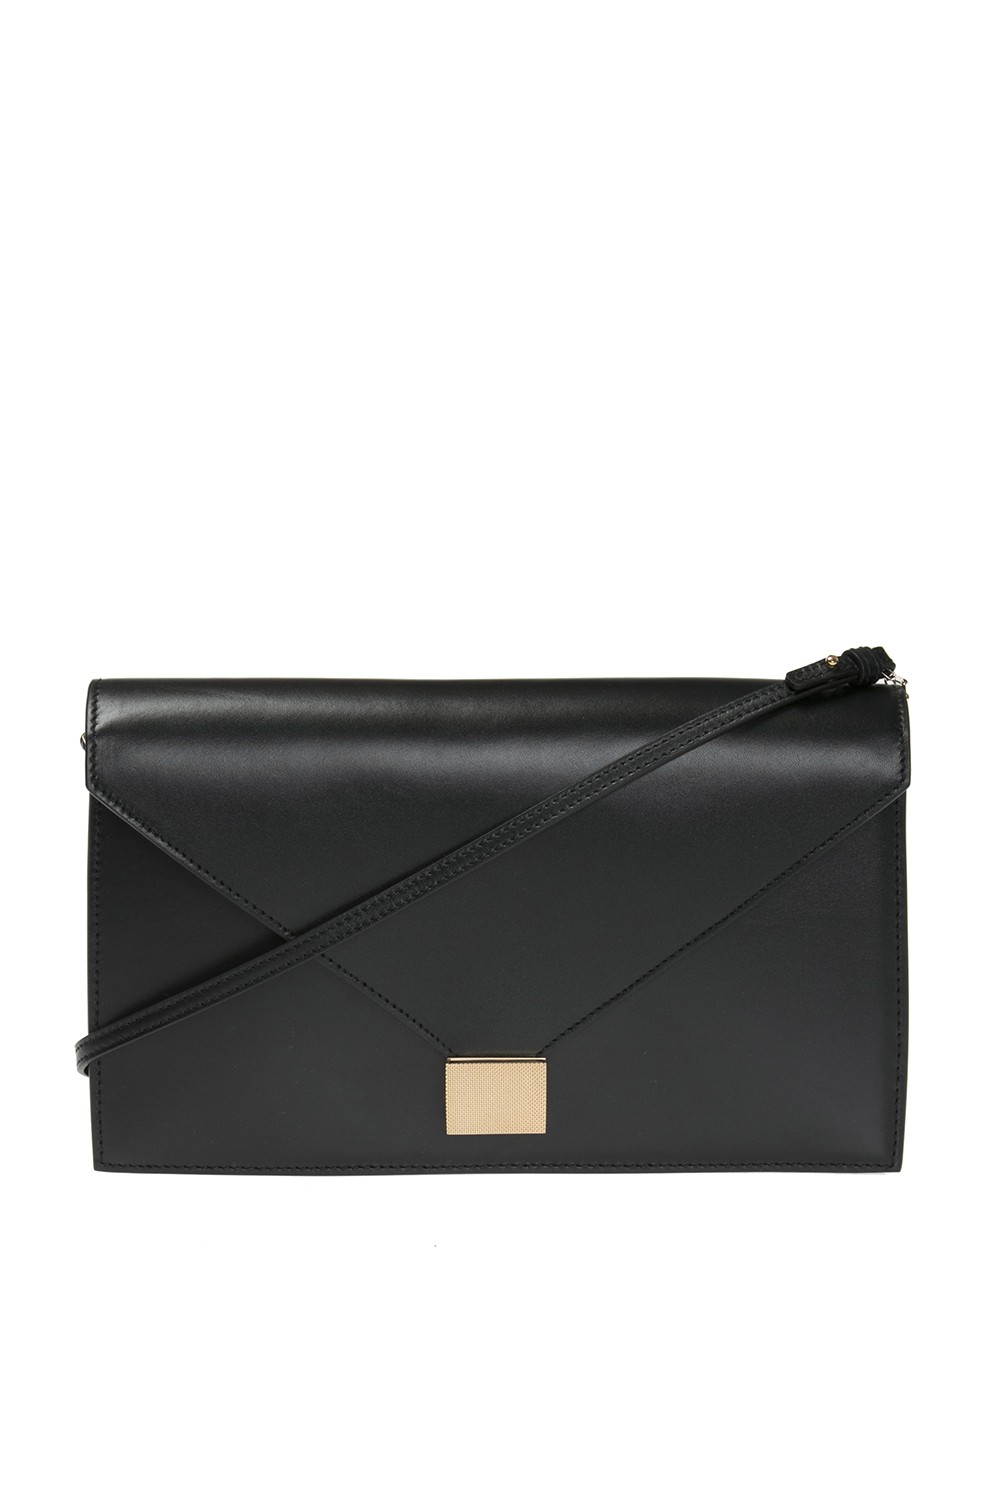 Victoria Beckham 'Envelope' shoulder bag